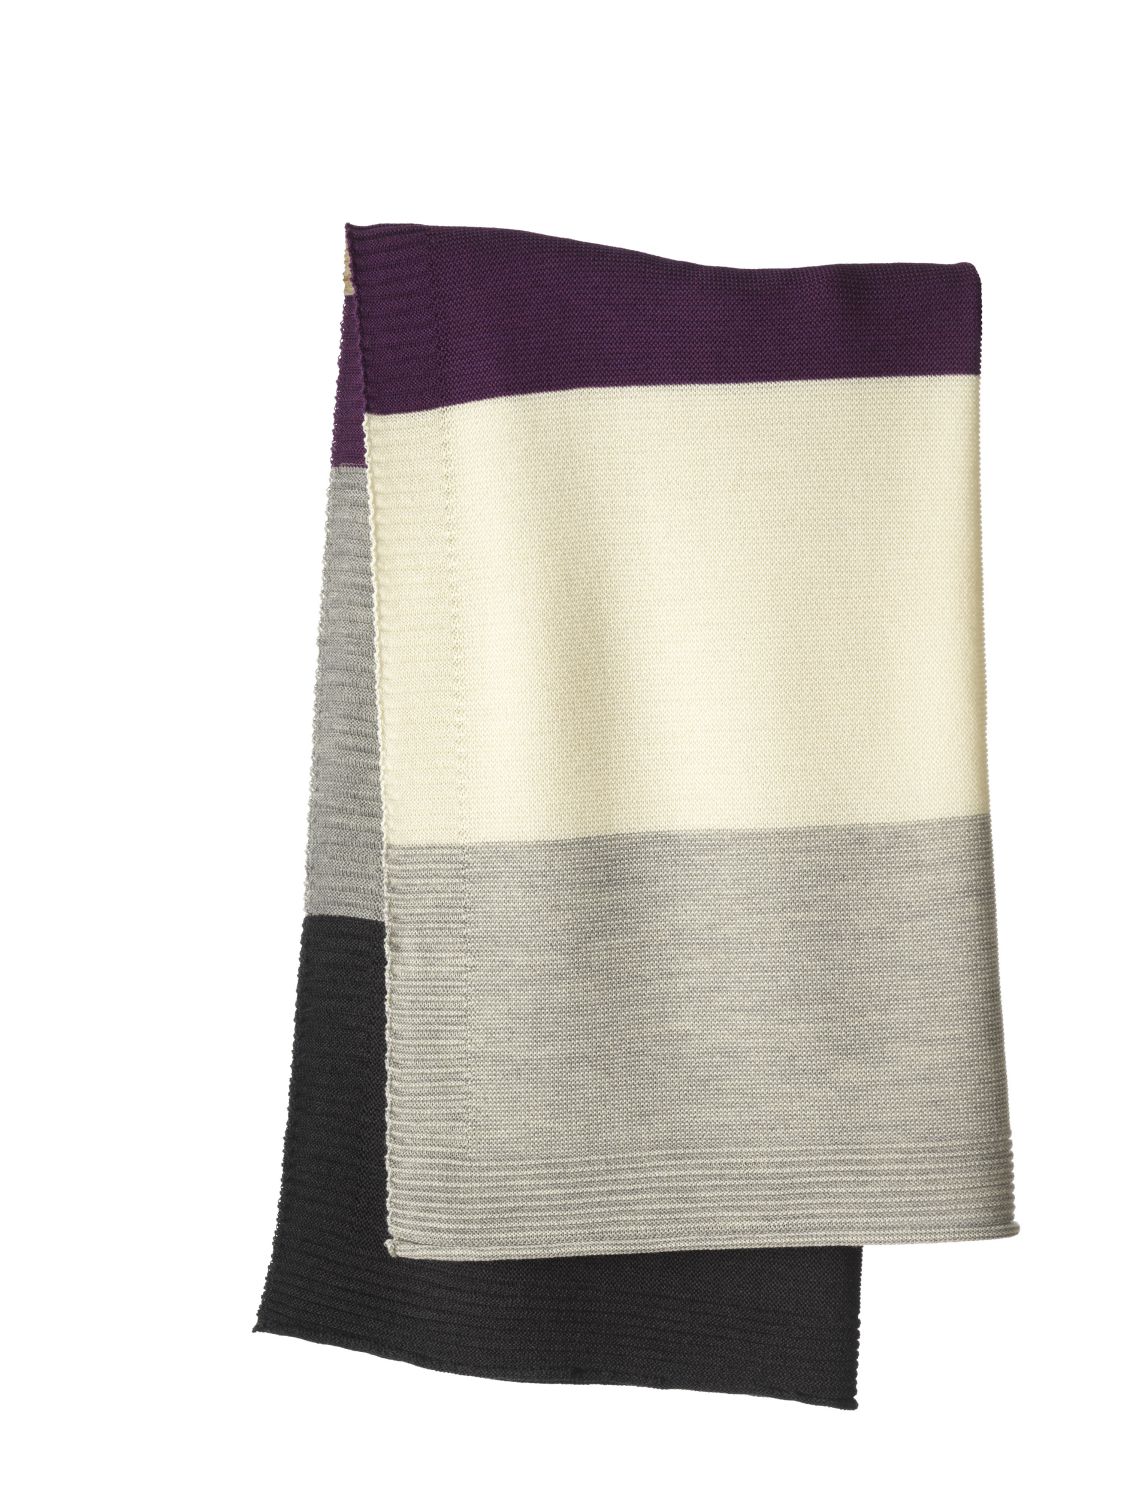 Disana Knitted Blanket - 80x100cm